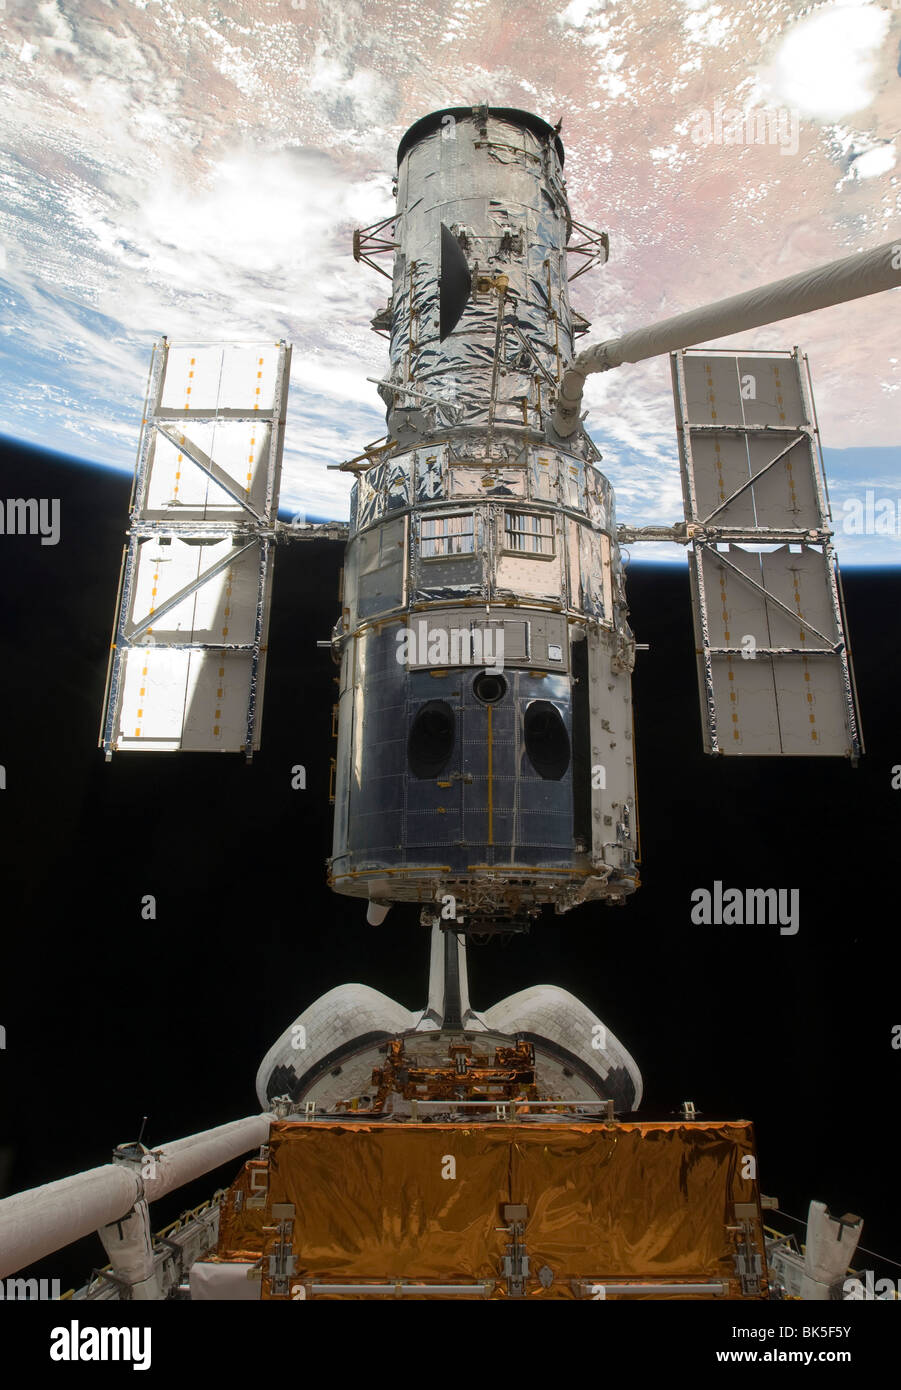 La navette spatiale Atlantis' lève le bras du télescope spatial Hubble de la baie de chargement Banque D'Images